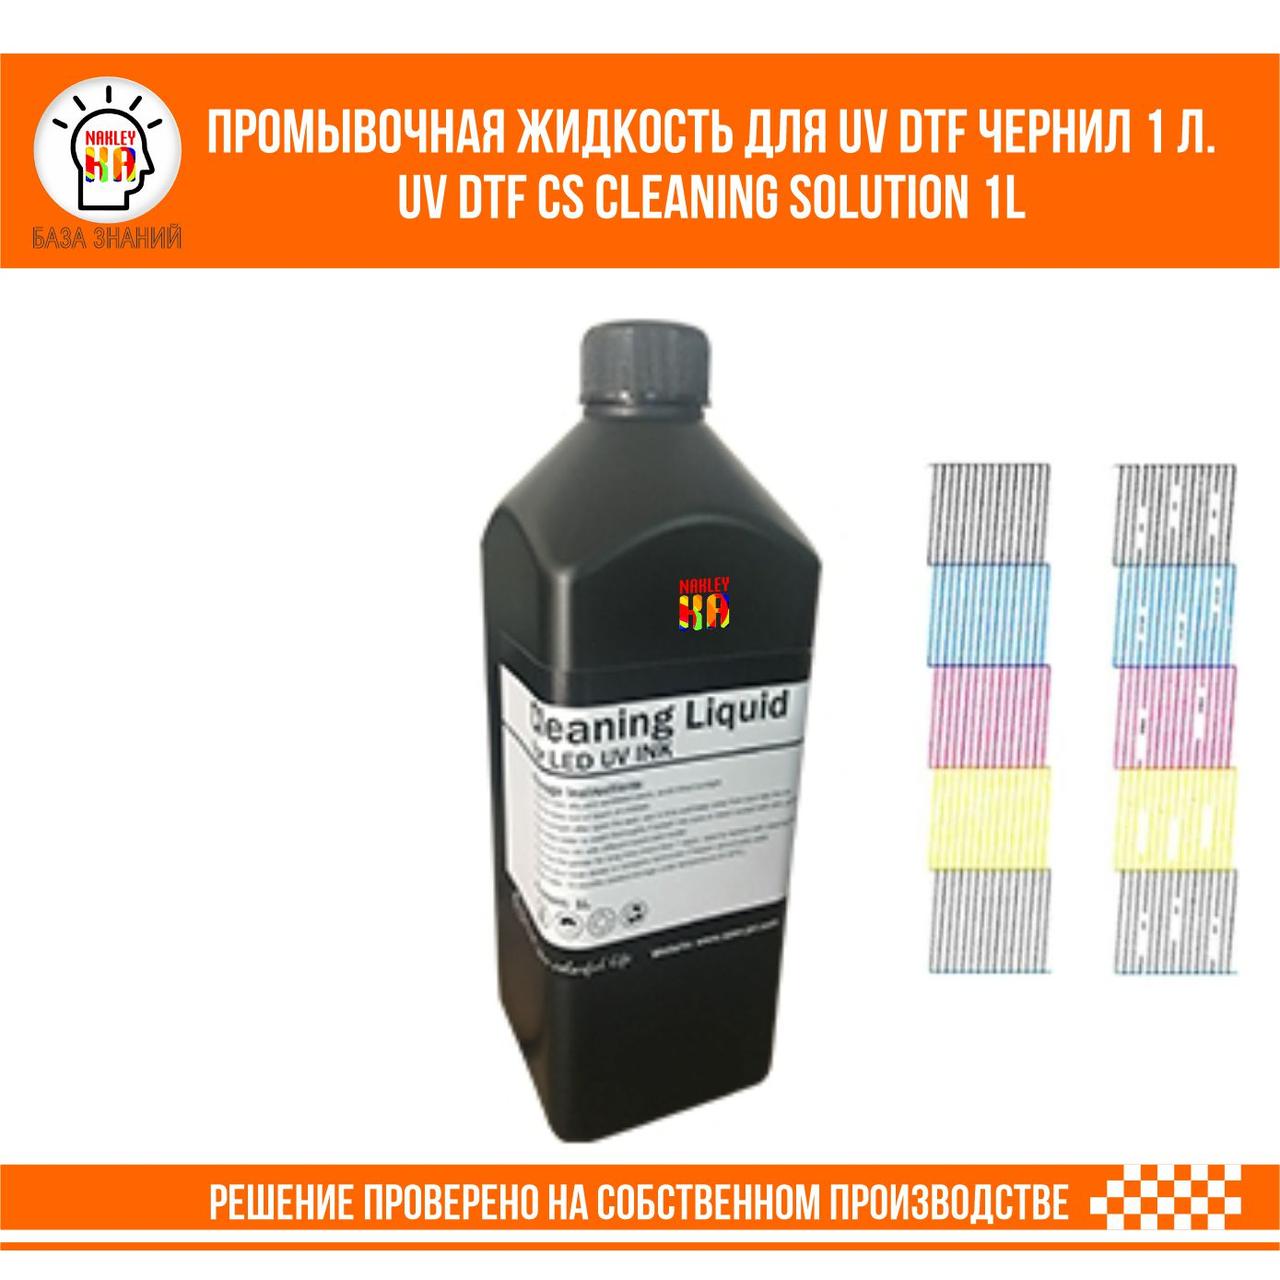 UV DTF CS Cleaning Solution Промывочная жидкость для УФ ДТФ чернил 1 л.